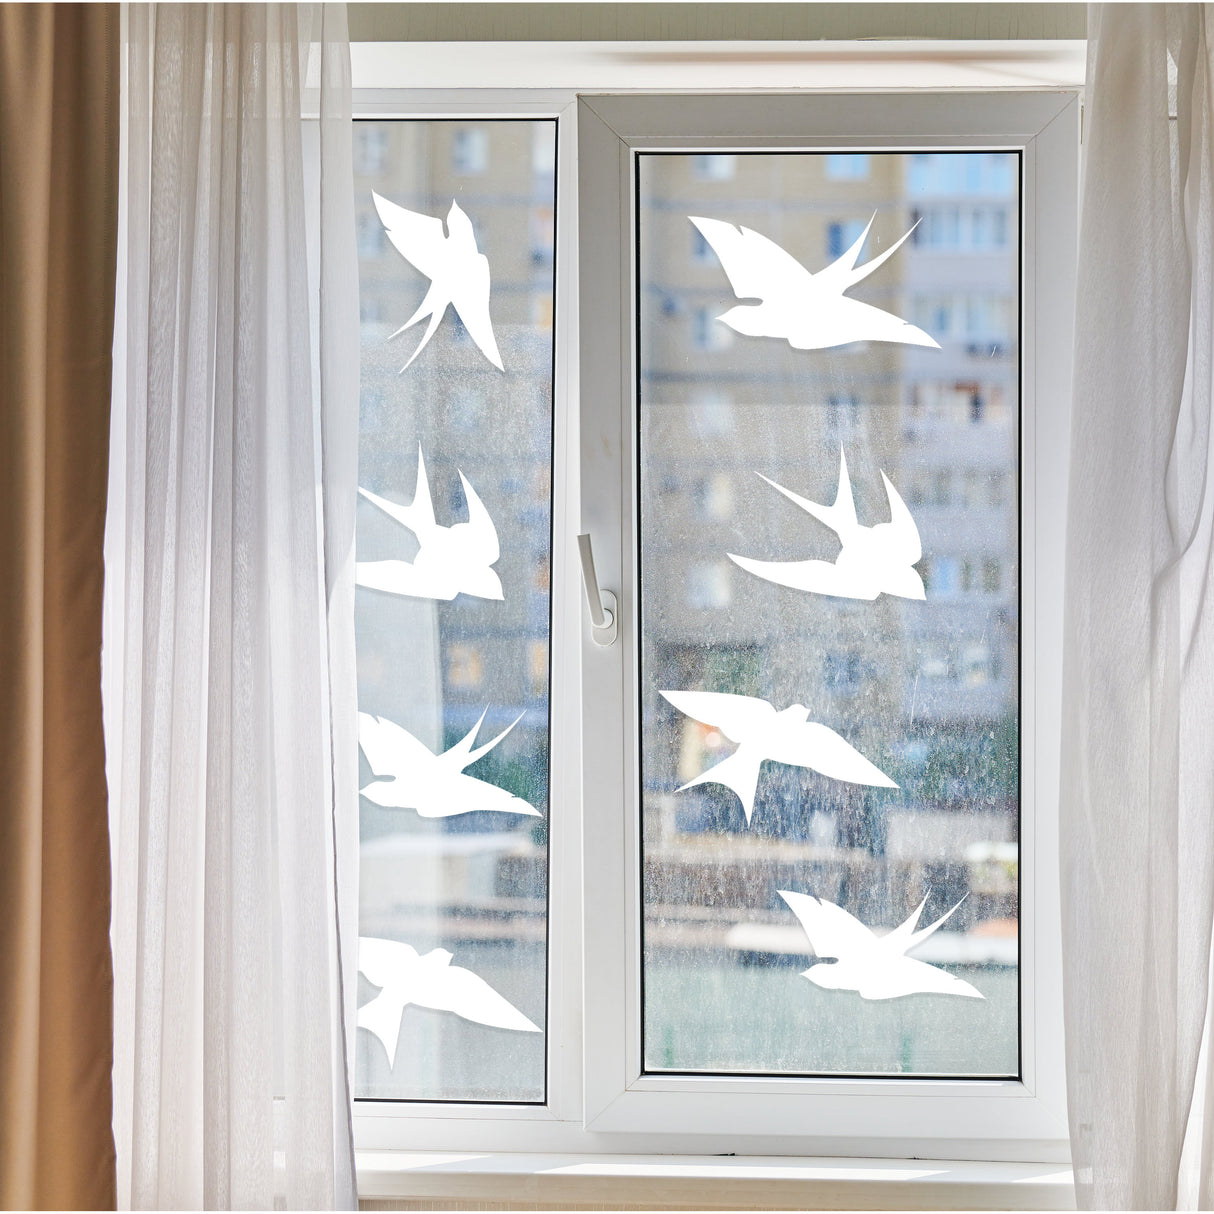 Bird Decals For Windows Anti Collision - Window Decals For Birds Strikes